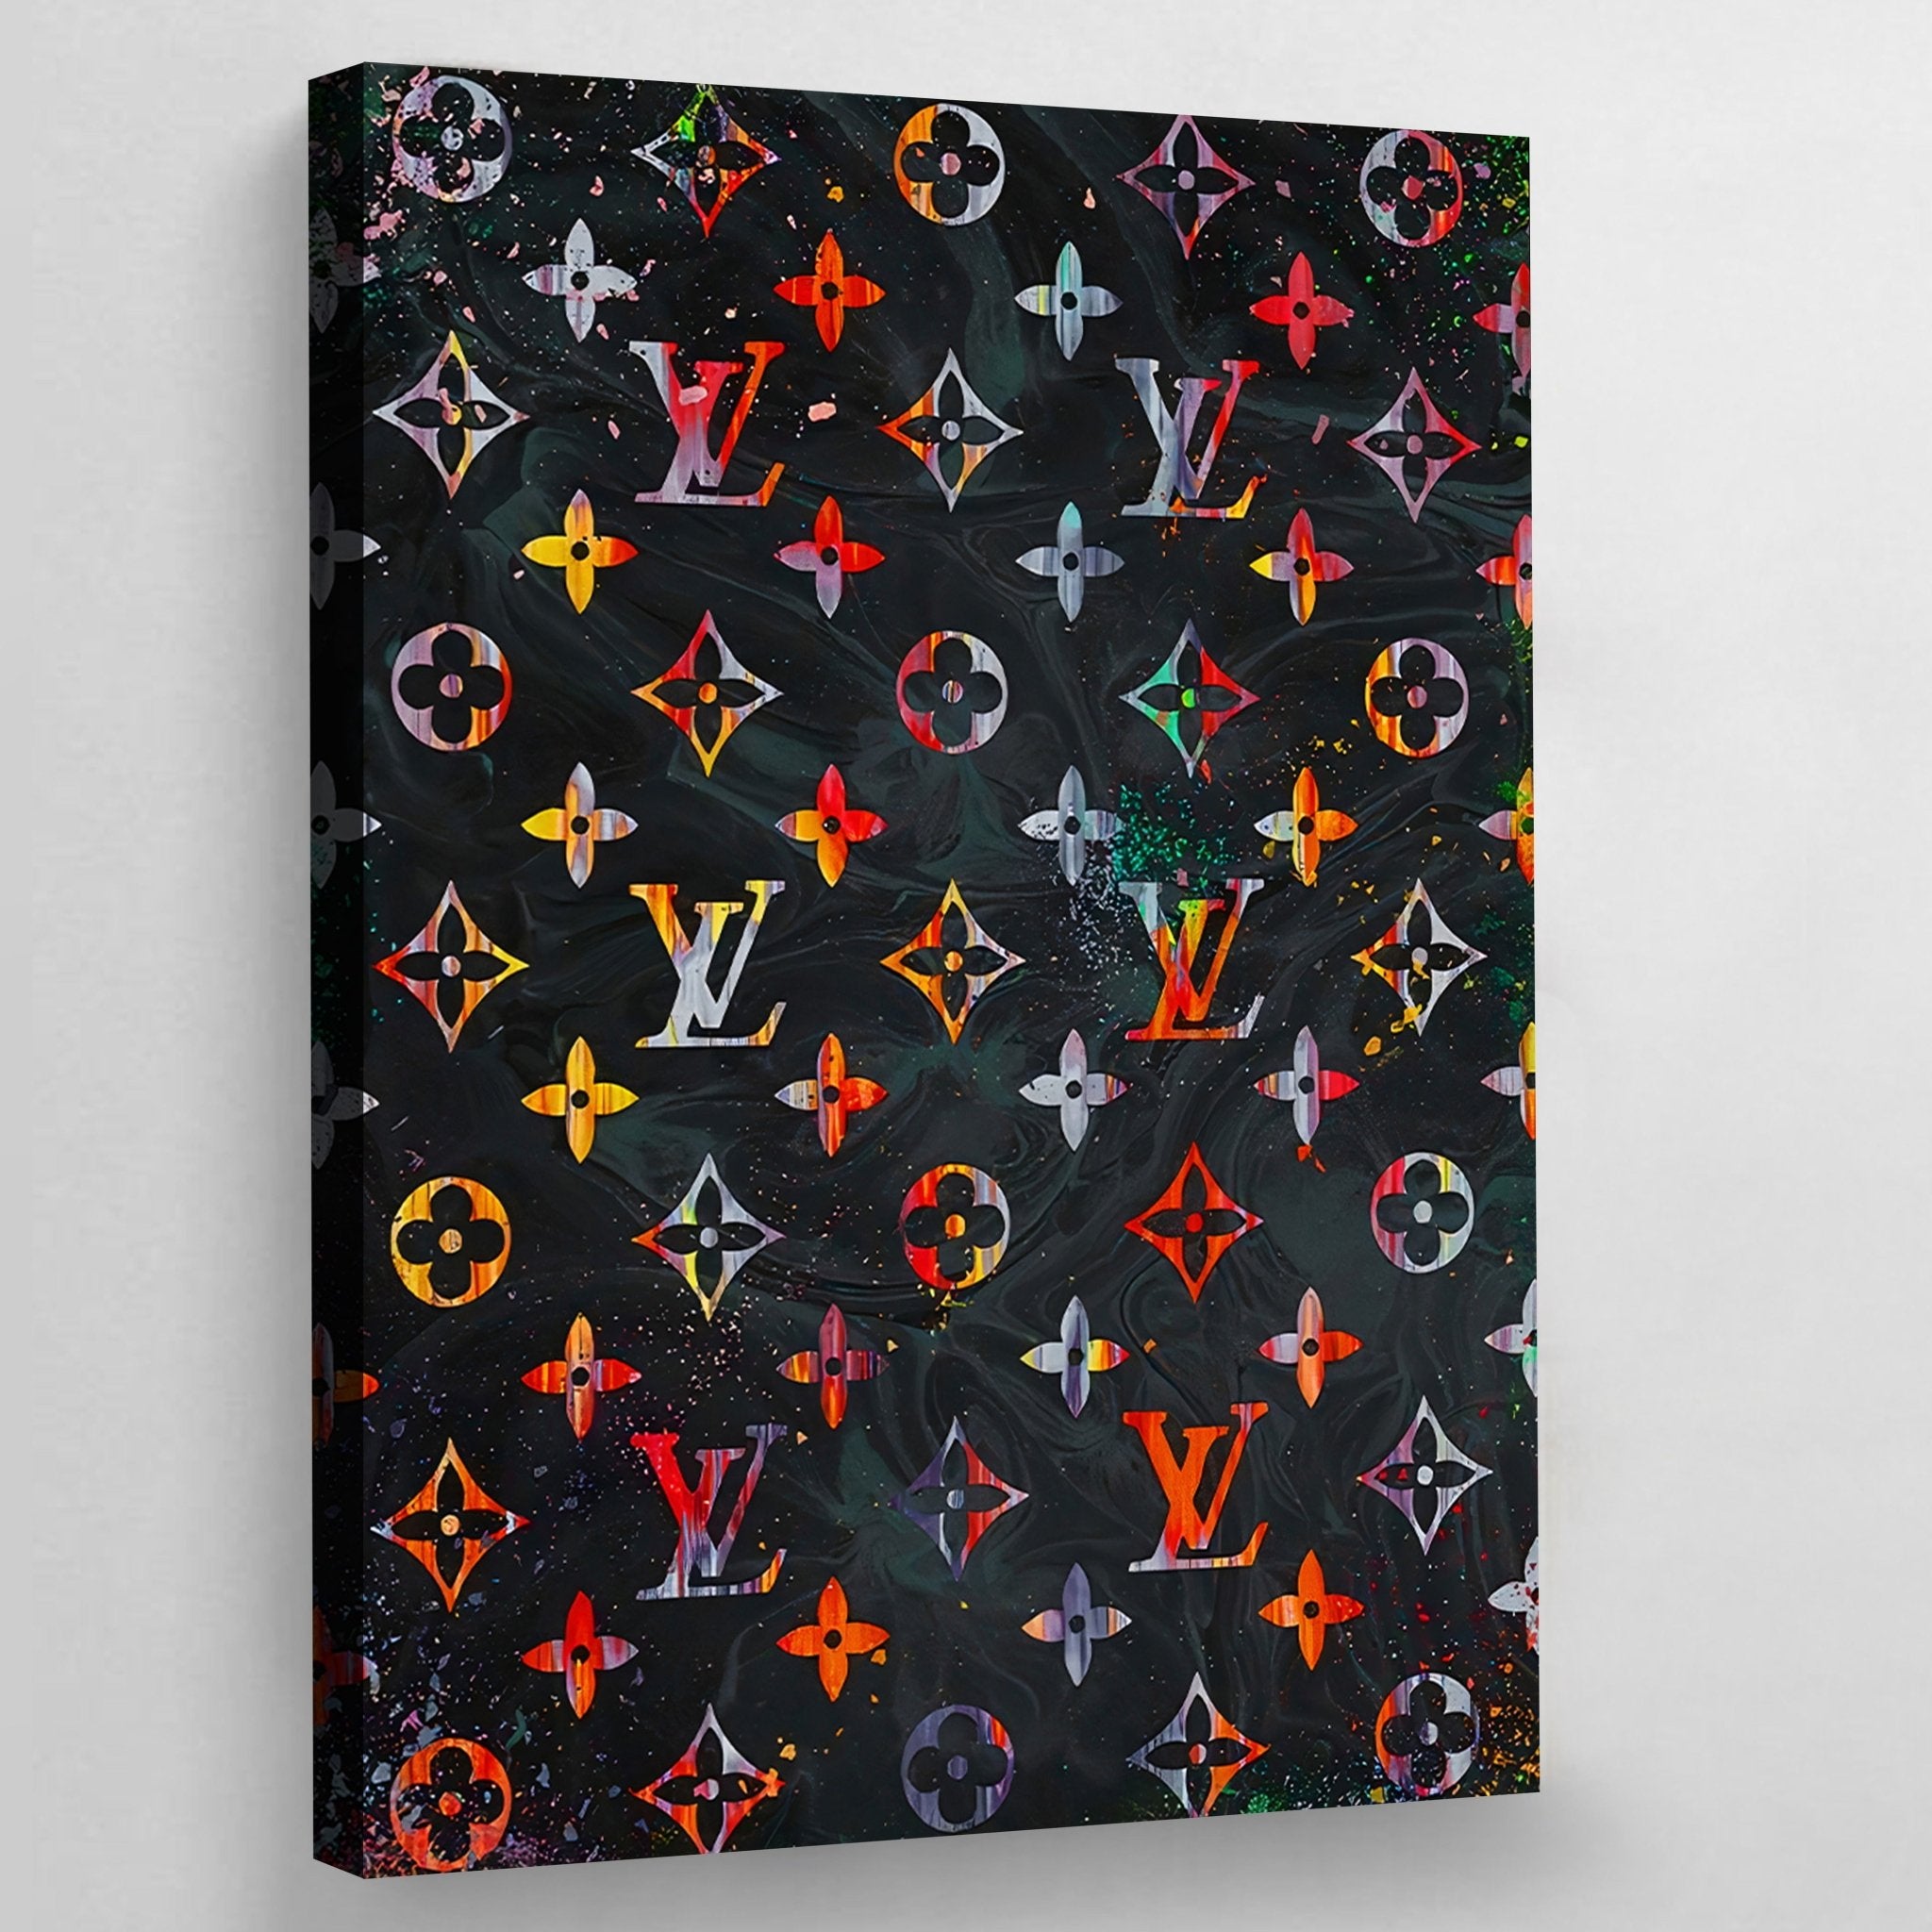 Louis Vuitton - (Hardcover)